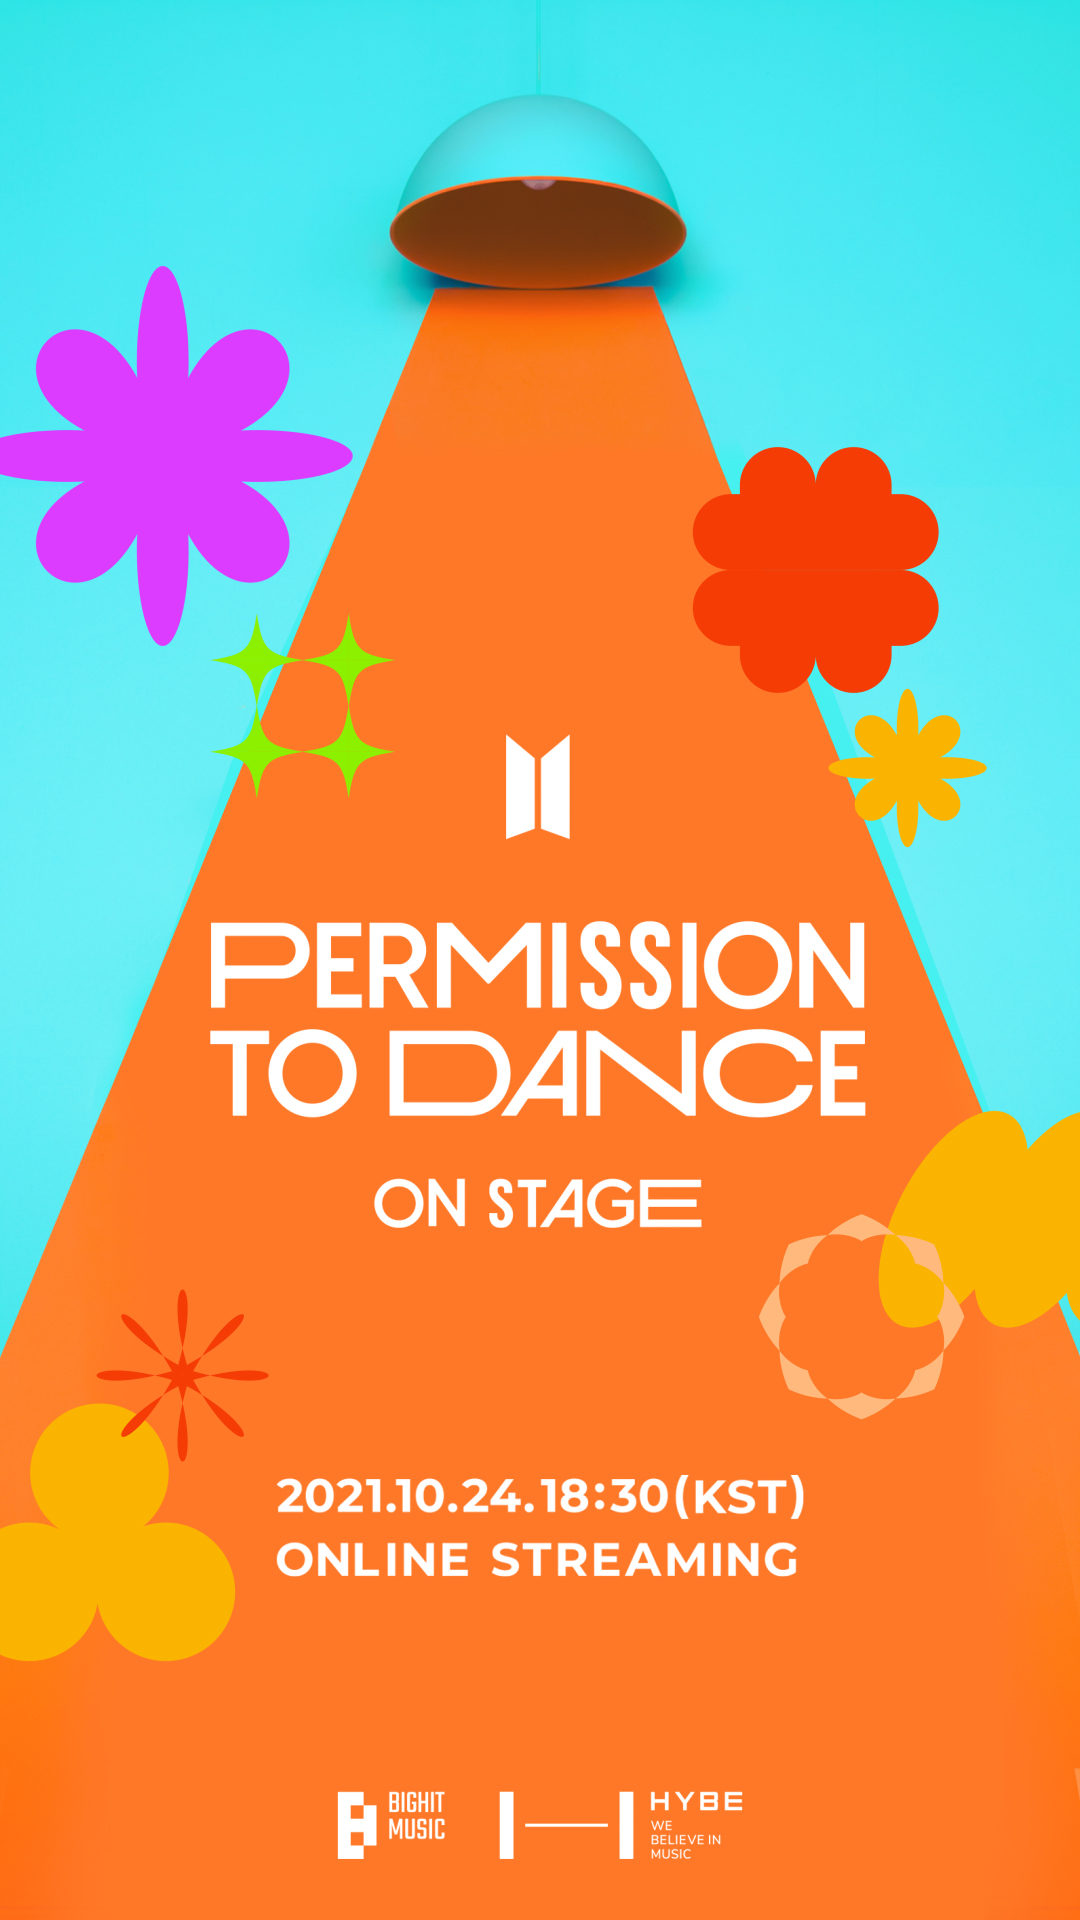 Bts permission to dance